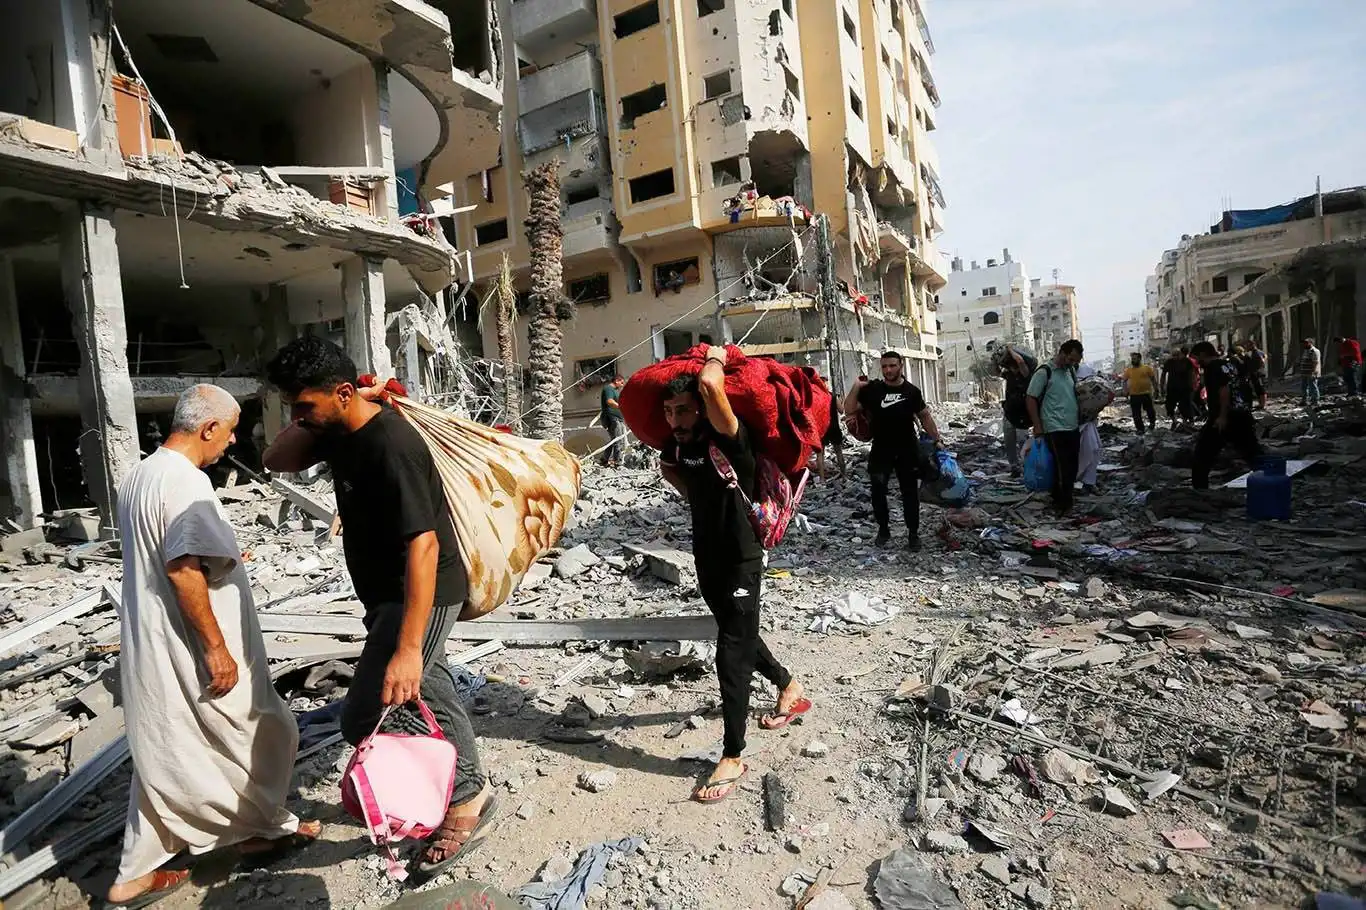 BM: Gazze soykırıma maruz kalıyor